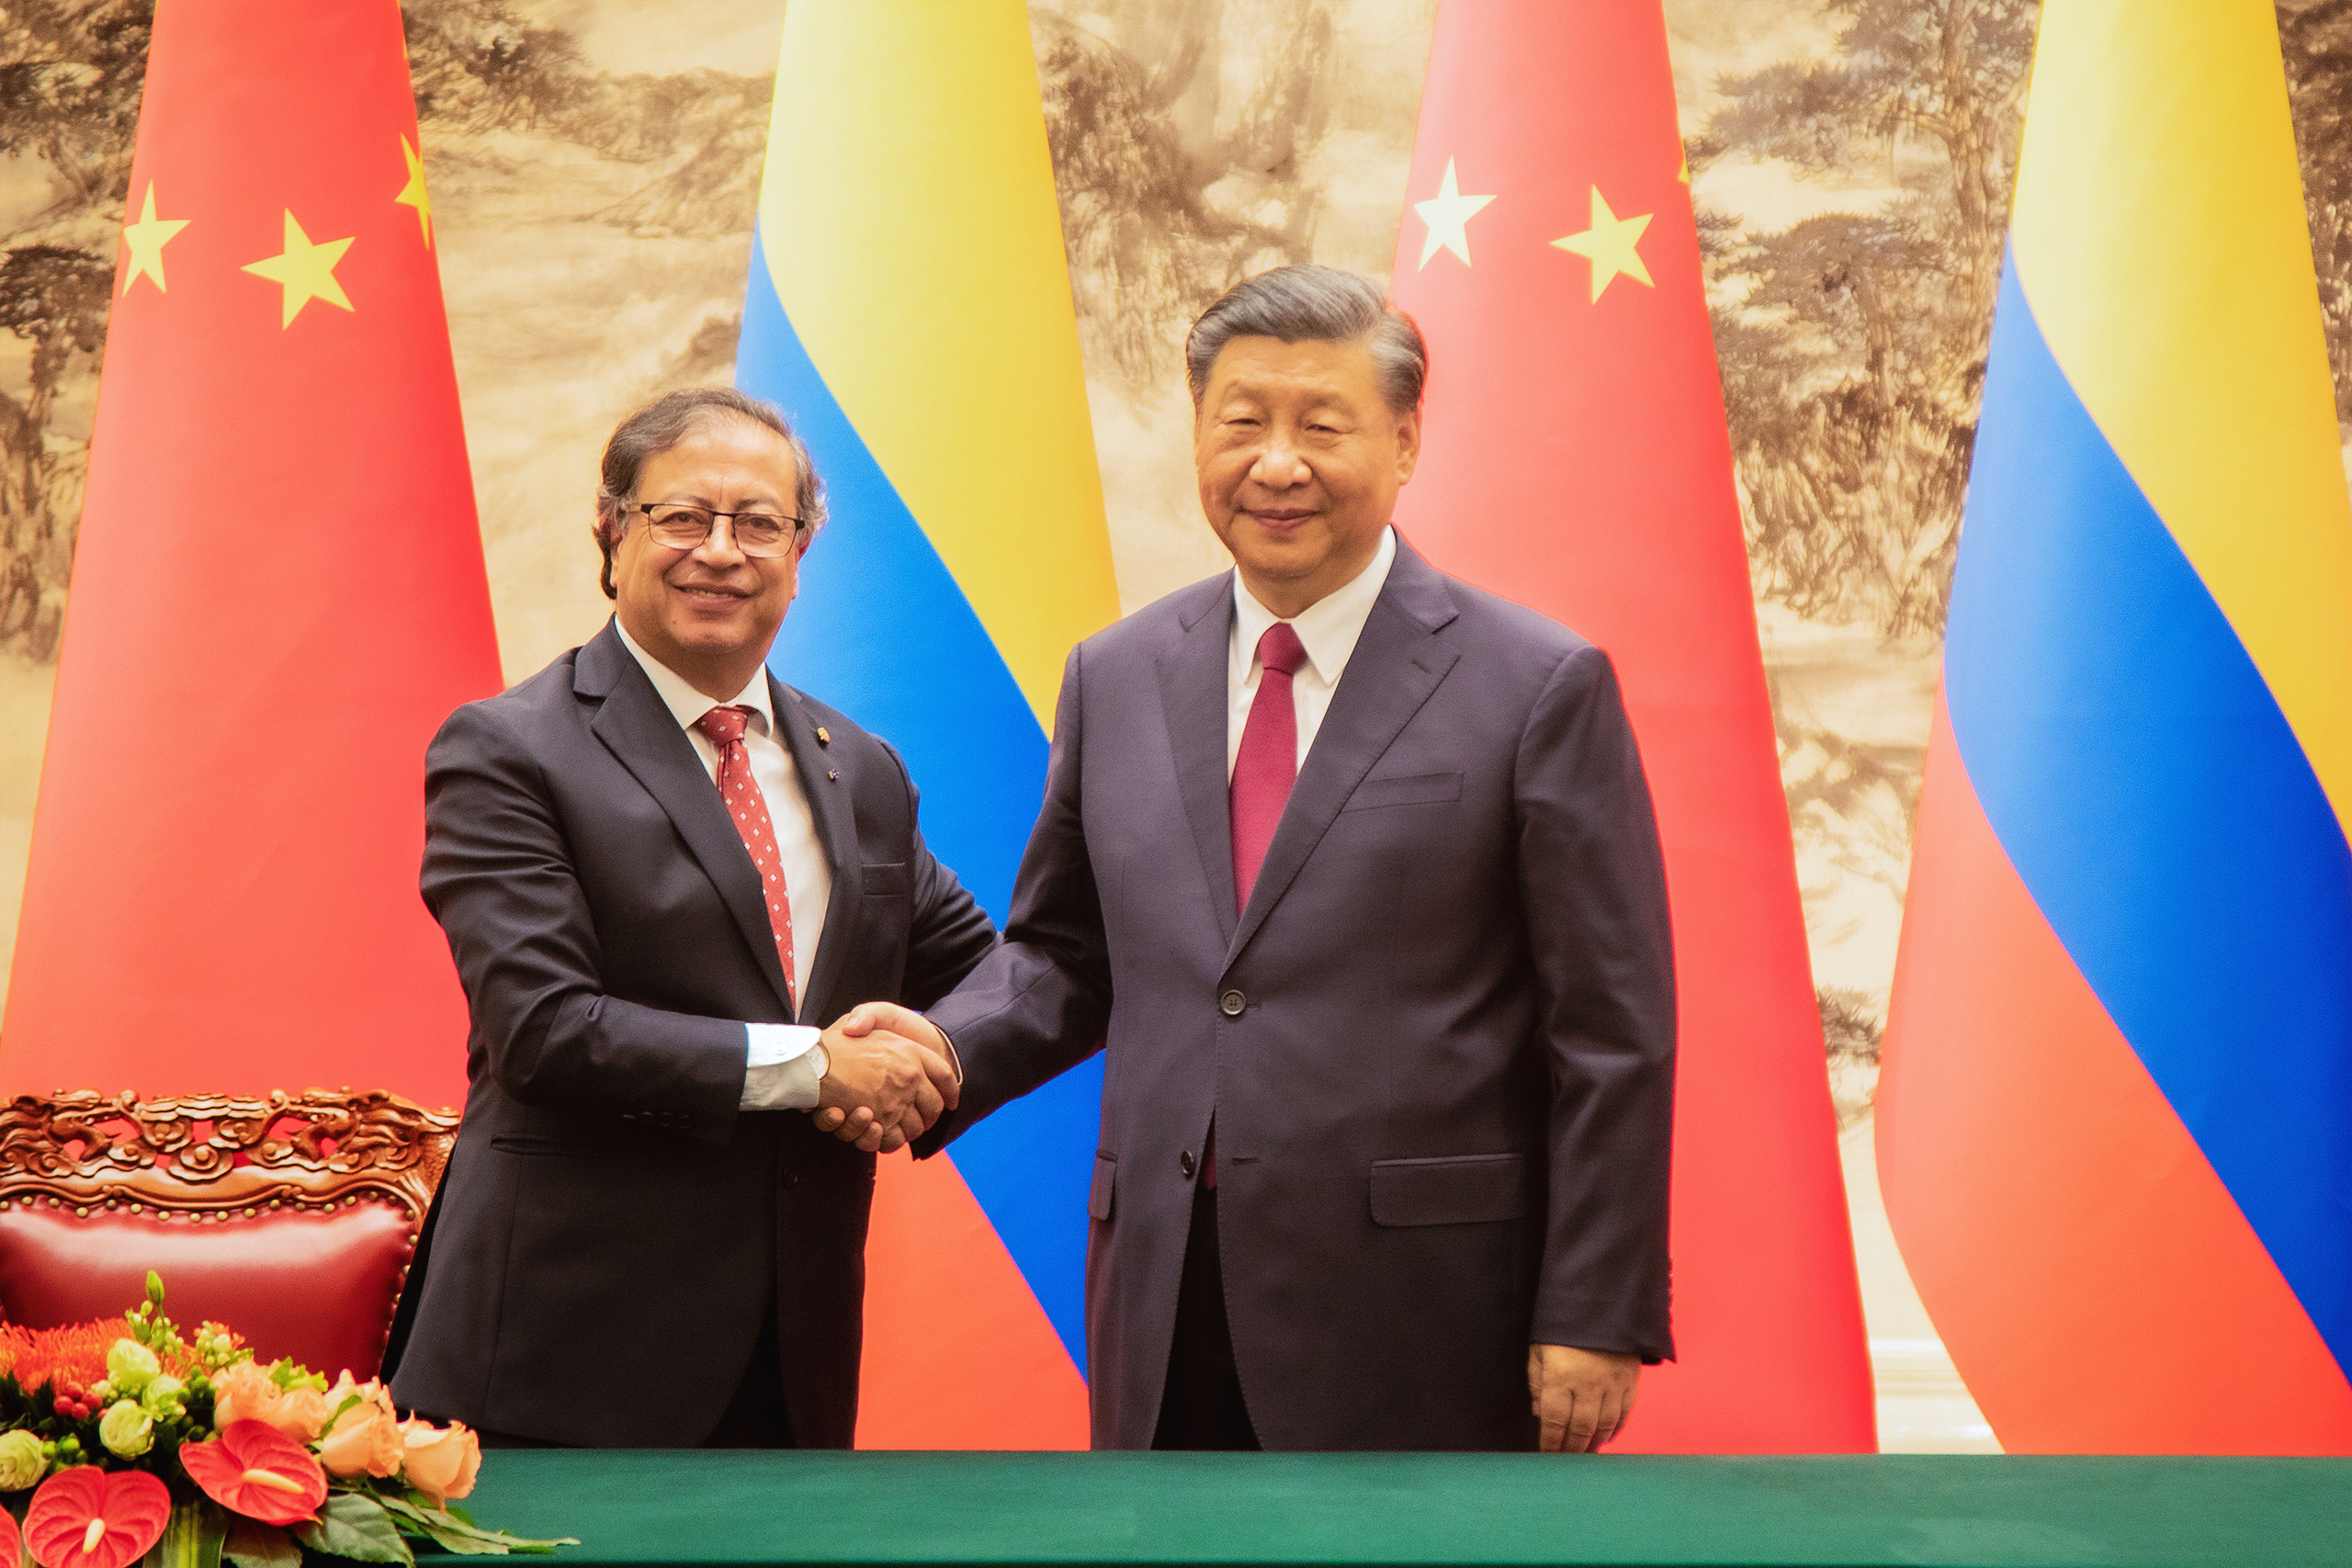 Aperto de mão de Gustavo Petro e Xi Jinping